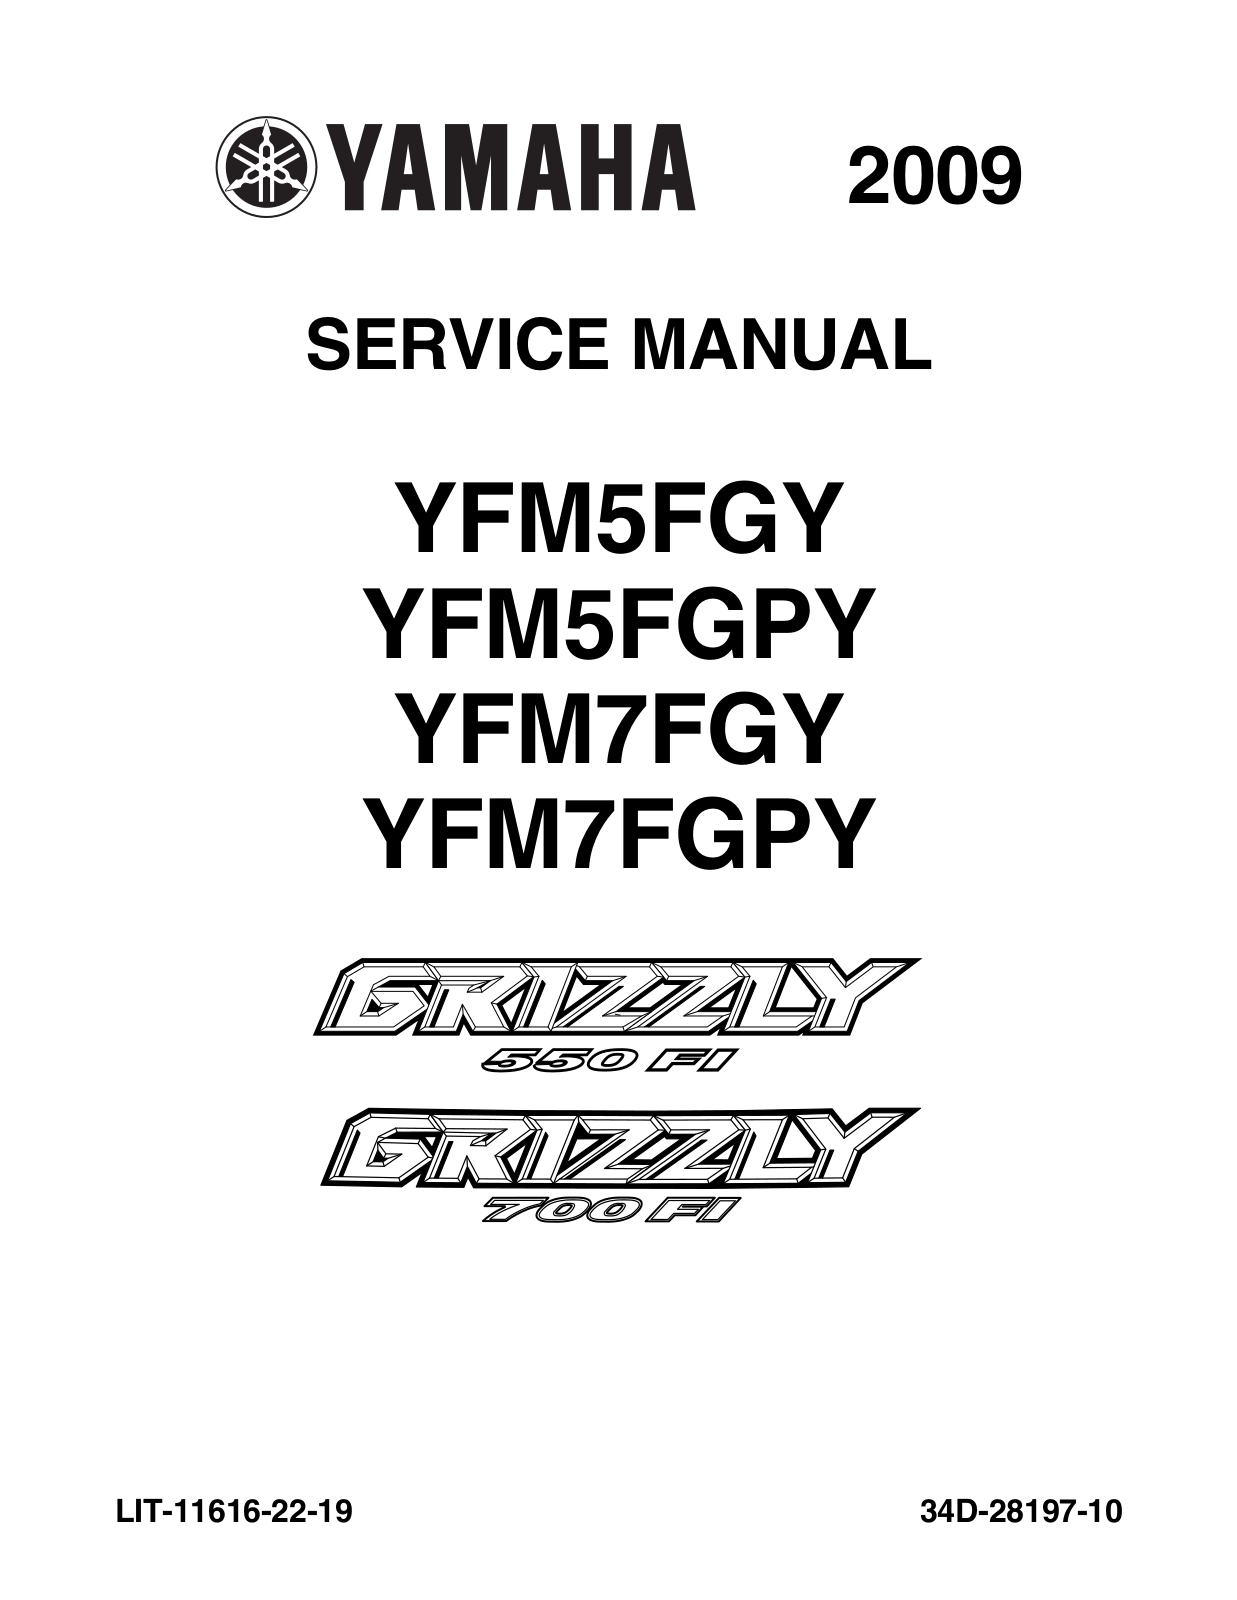 YAMAHA YFM5FGY, YFM5FGPY, YFM7FGY, YFM7FGPY User Manual